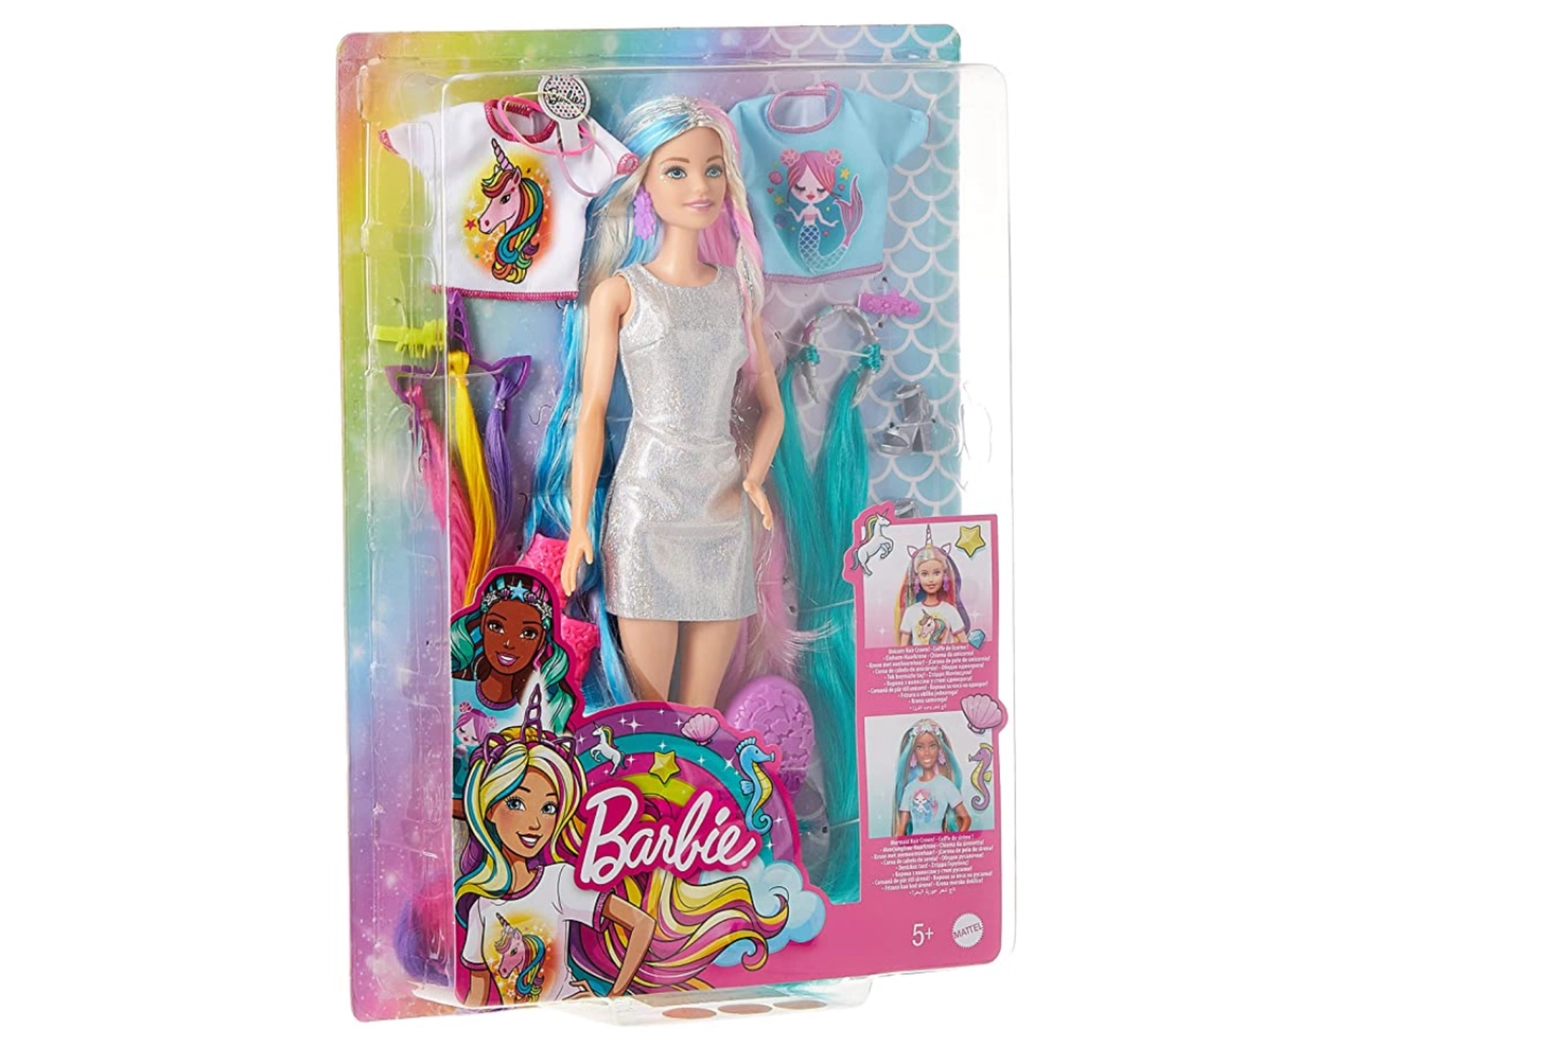 Bambola Barbie Capelli Fantasia